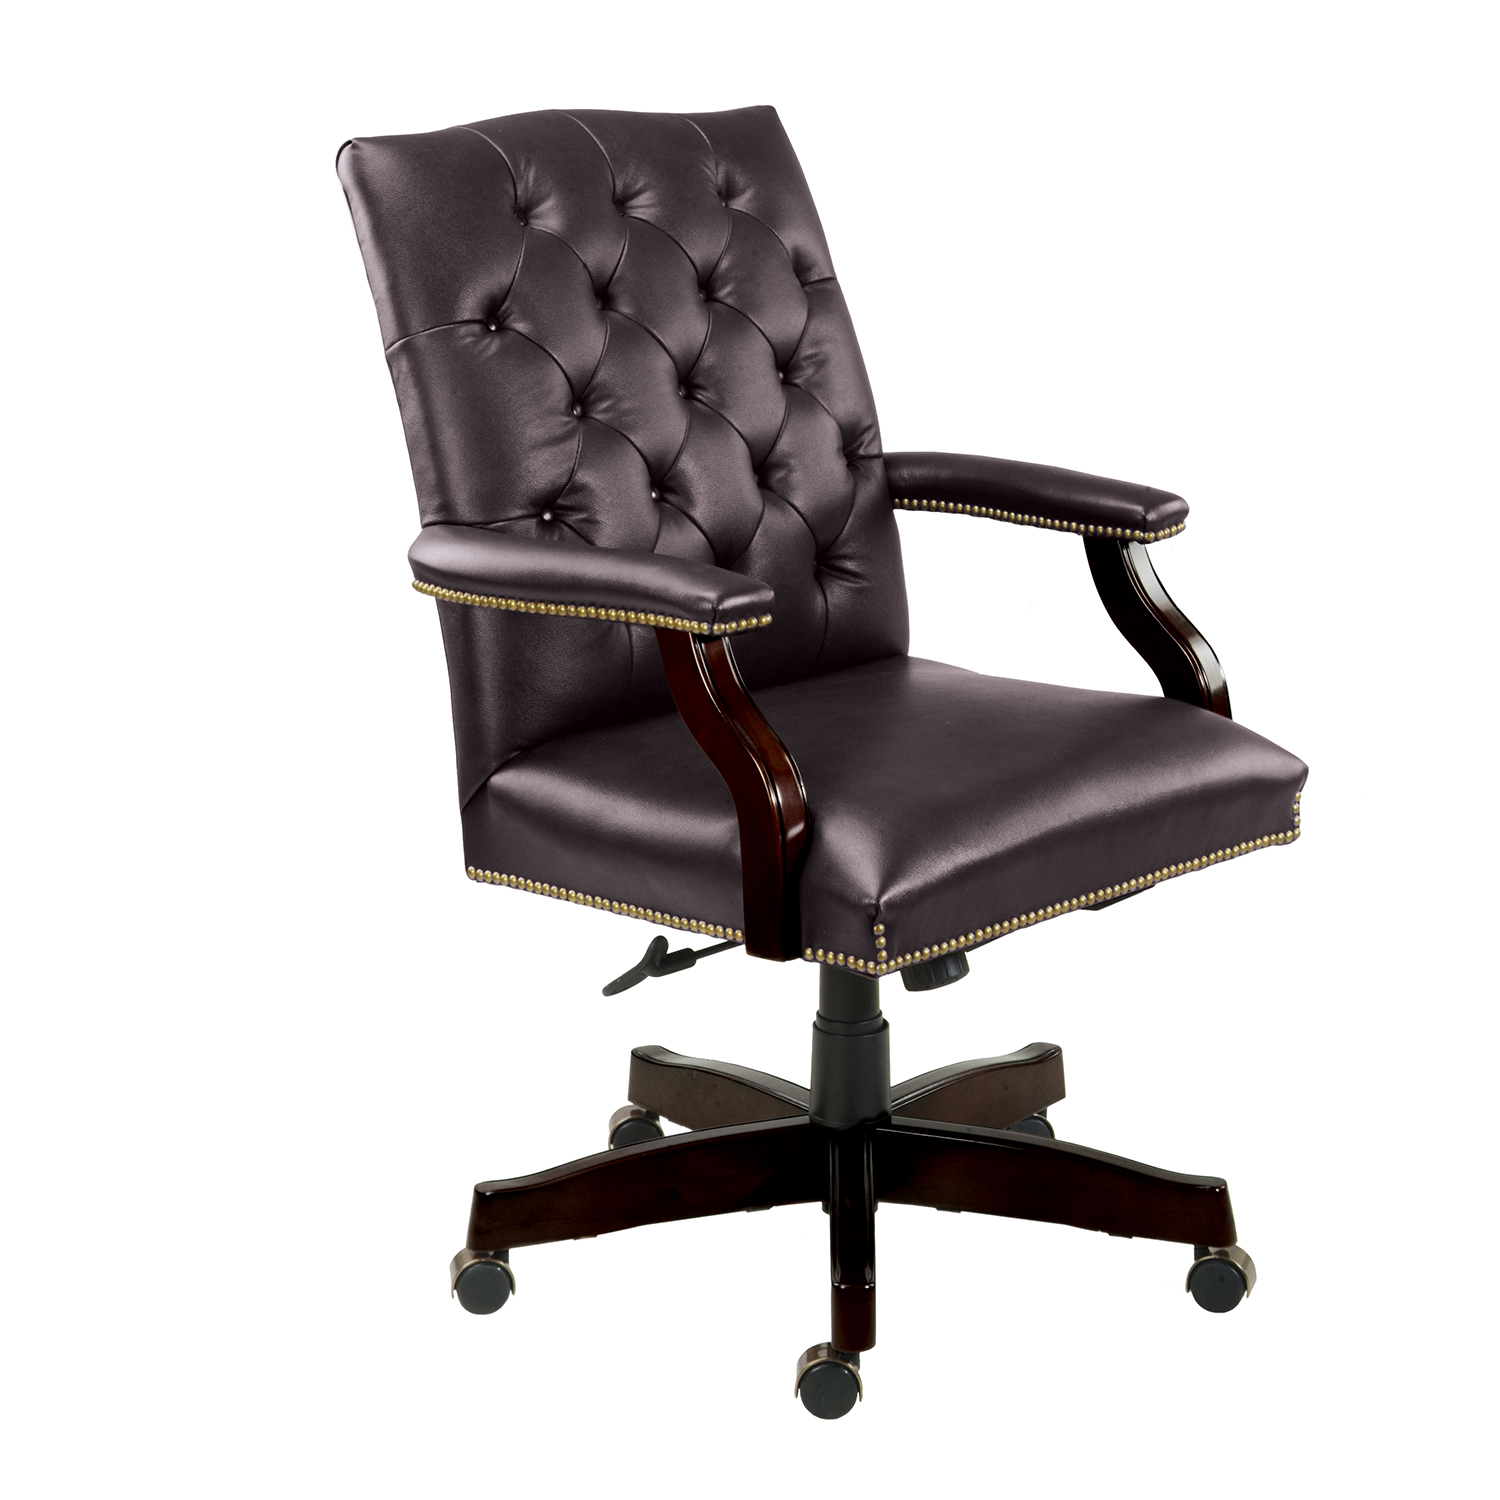 кресло кожаное зеленое для руководителя